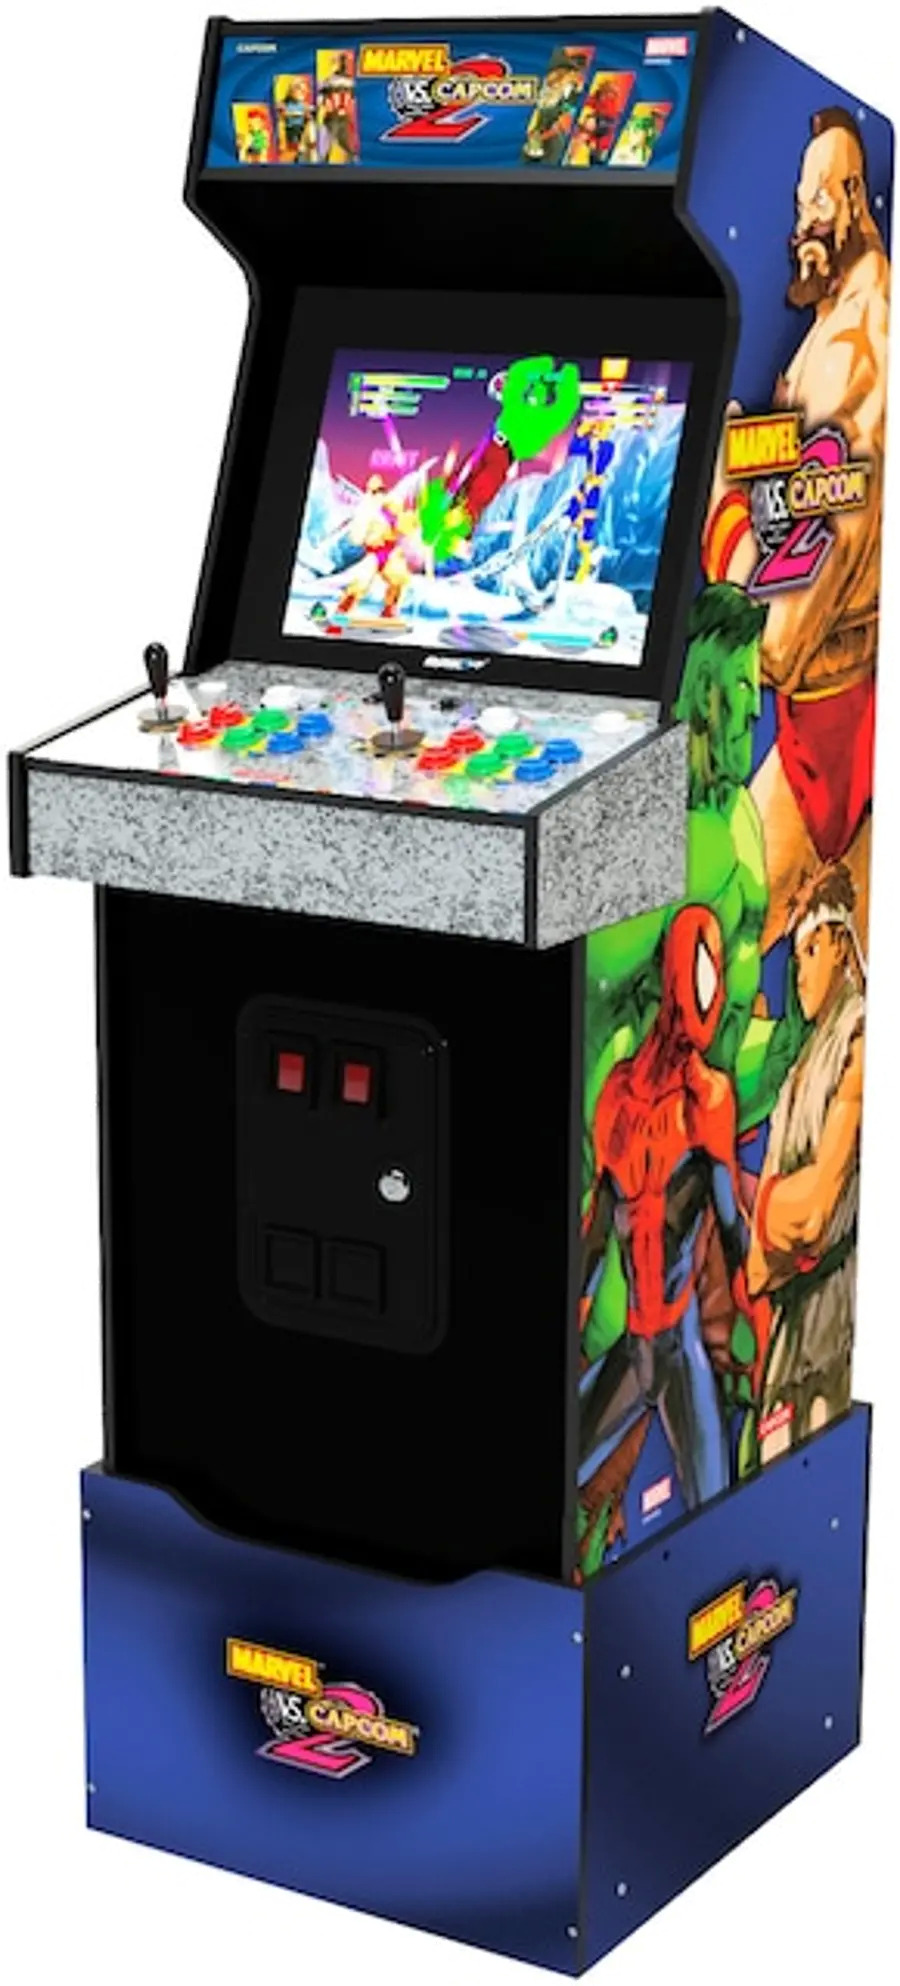 Marvel vs Capcom 2 (Arcade1Up) RC Wiley $350